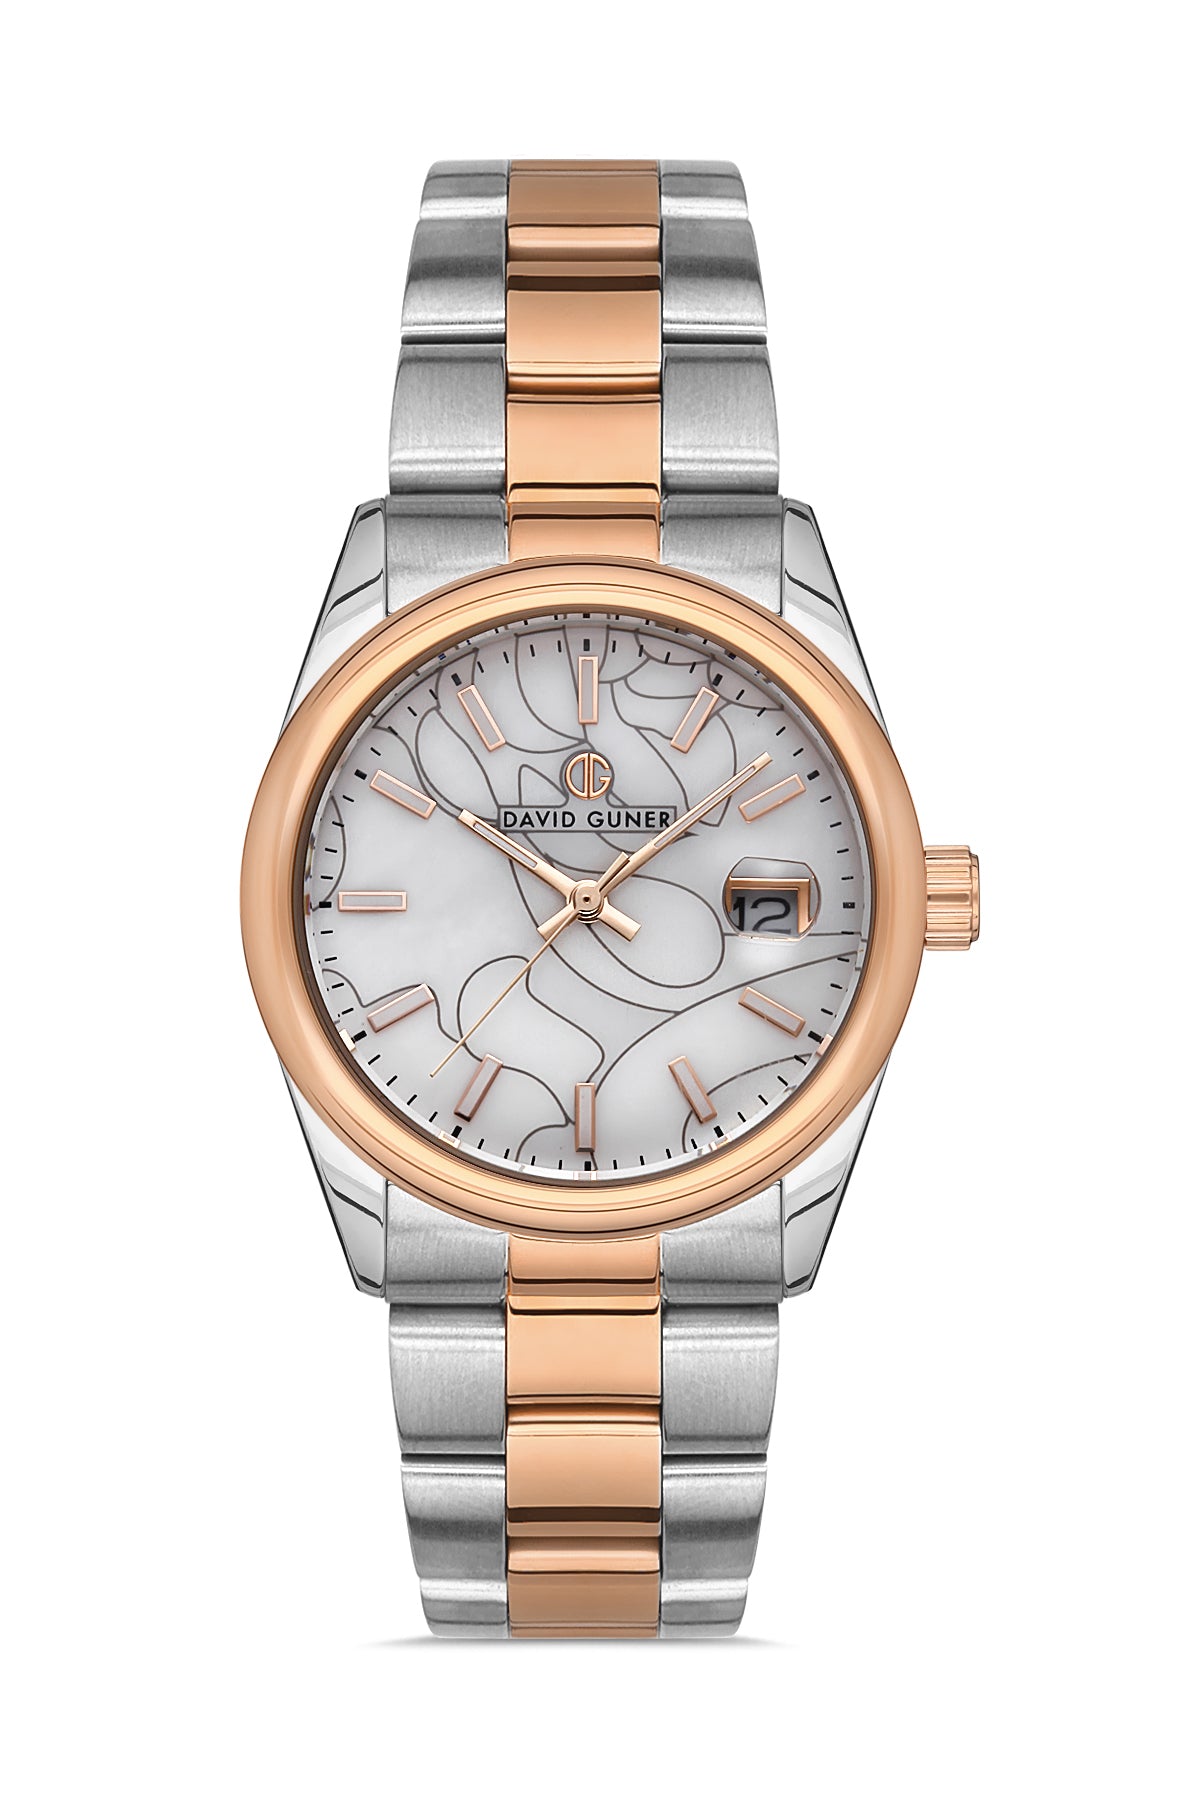 DAVID GUNER Calendar and Silver Dial Women's Wristwatch